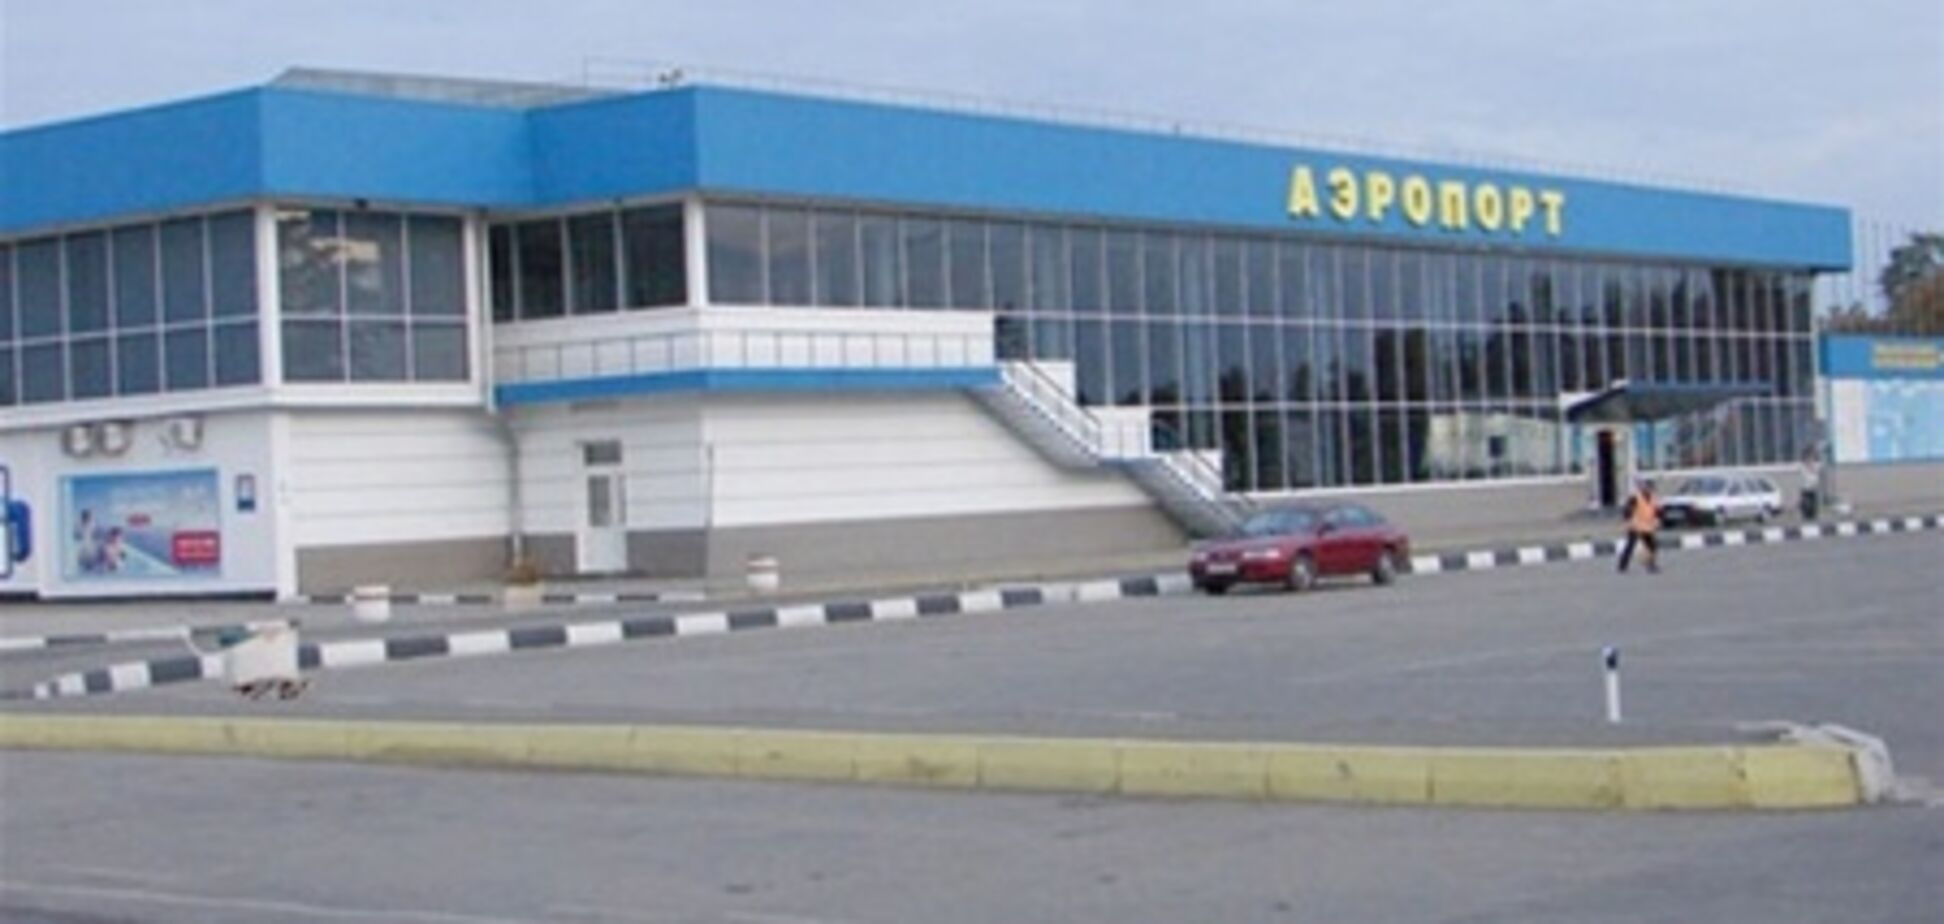 Шутка пассажира парализовала работу аэропорта в Крыму на 3 часа